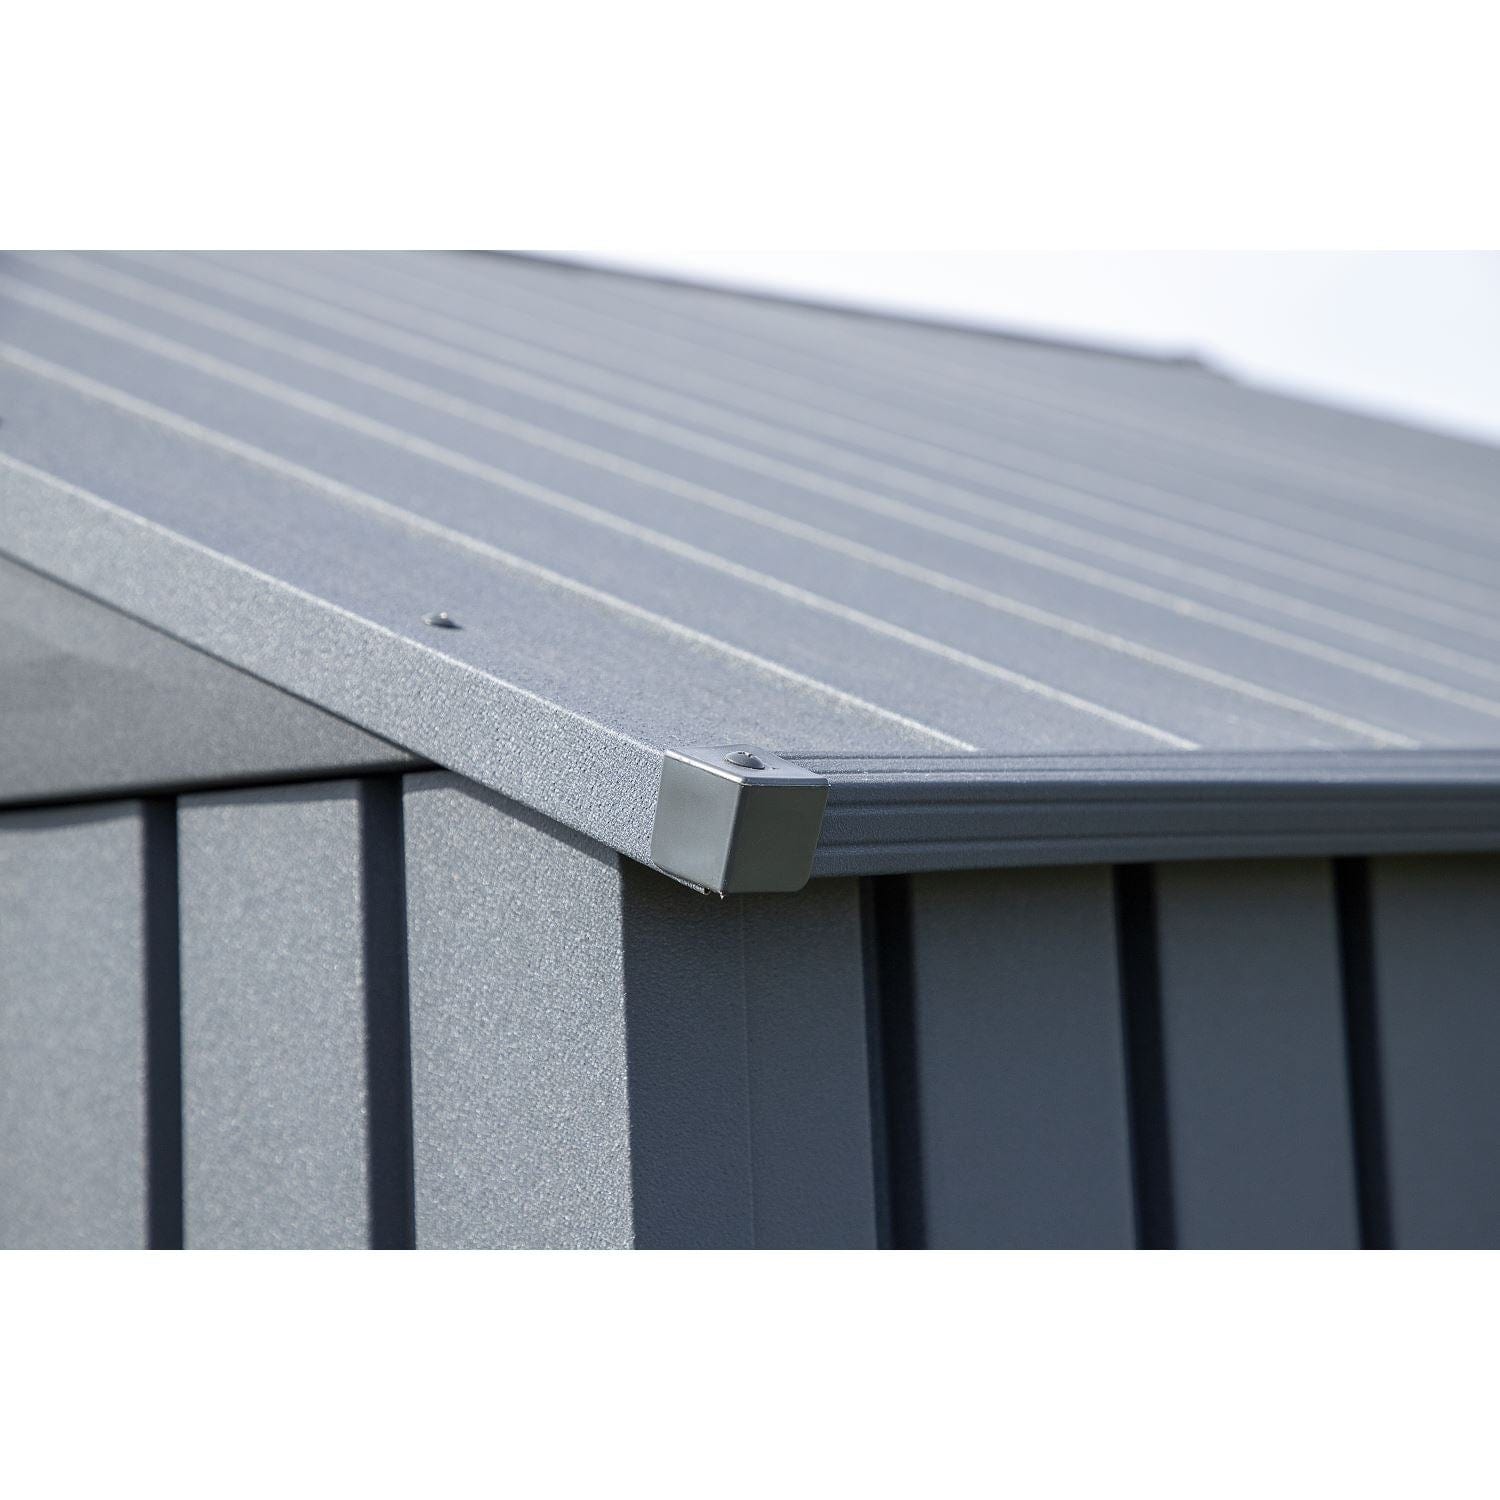 Arrow Sheds & Storage Buildings Arrow | Elite Steel Storage Shed, 10x8 ft. Blue Grey EG108BG